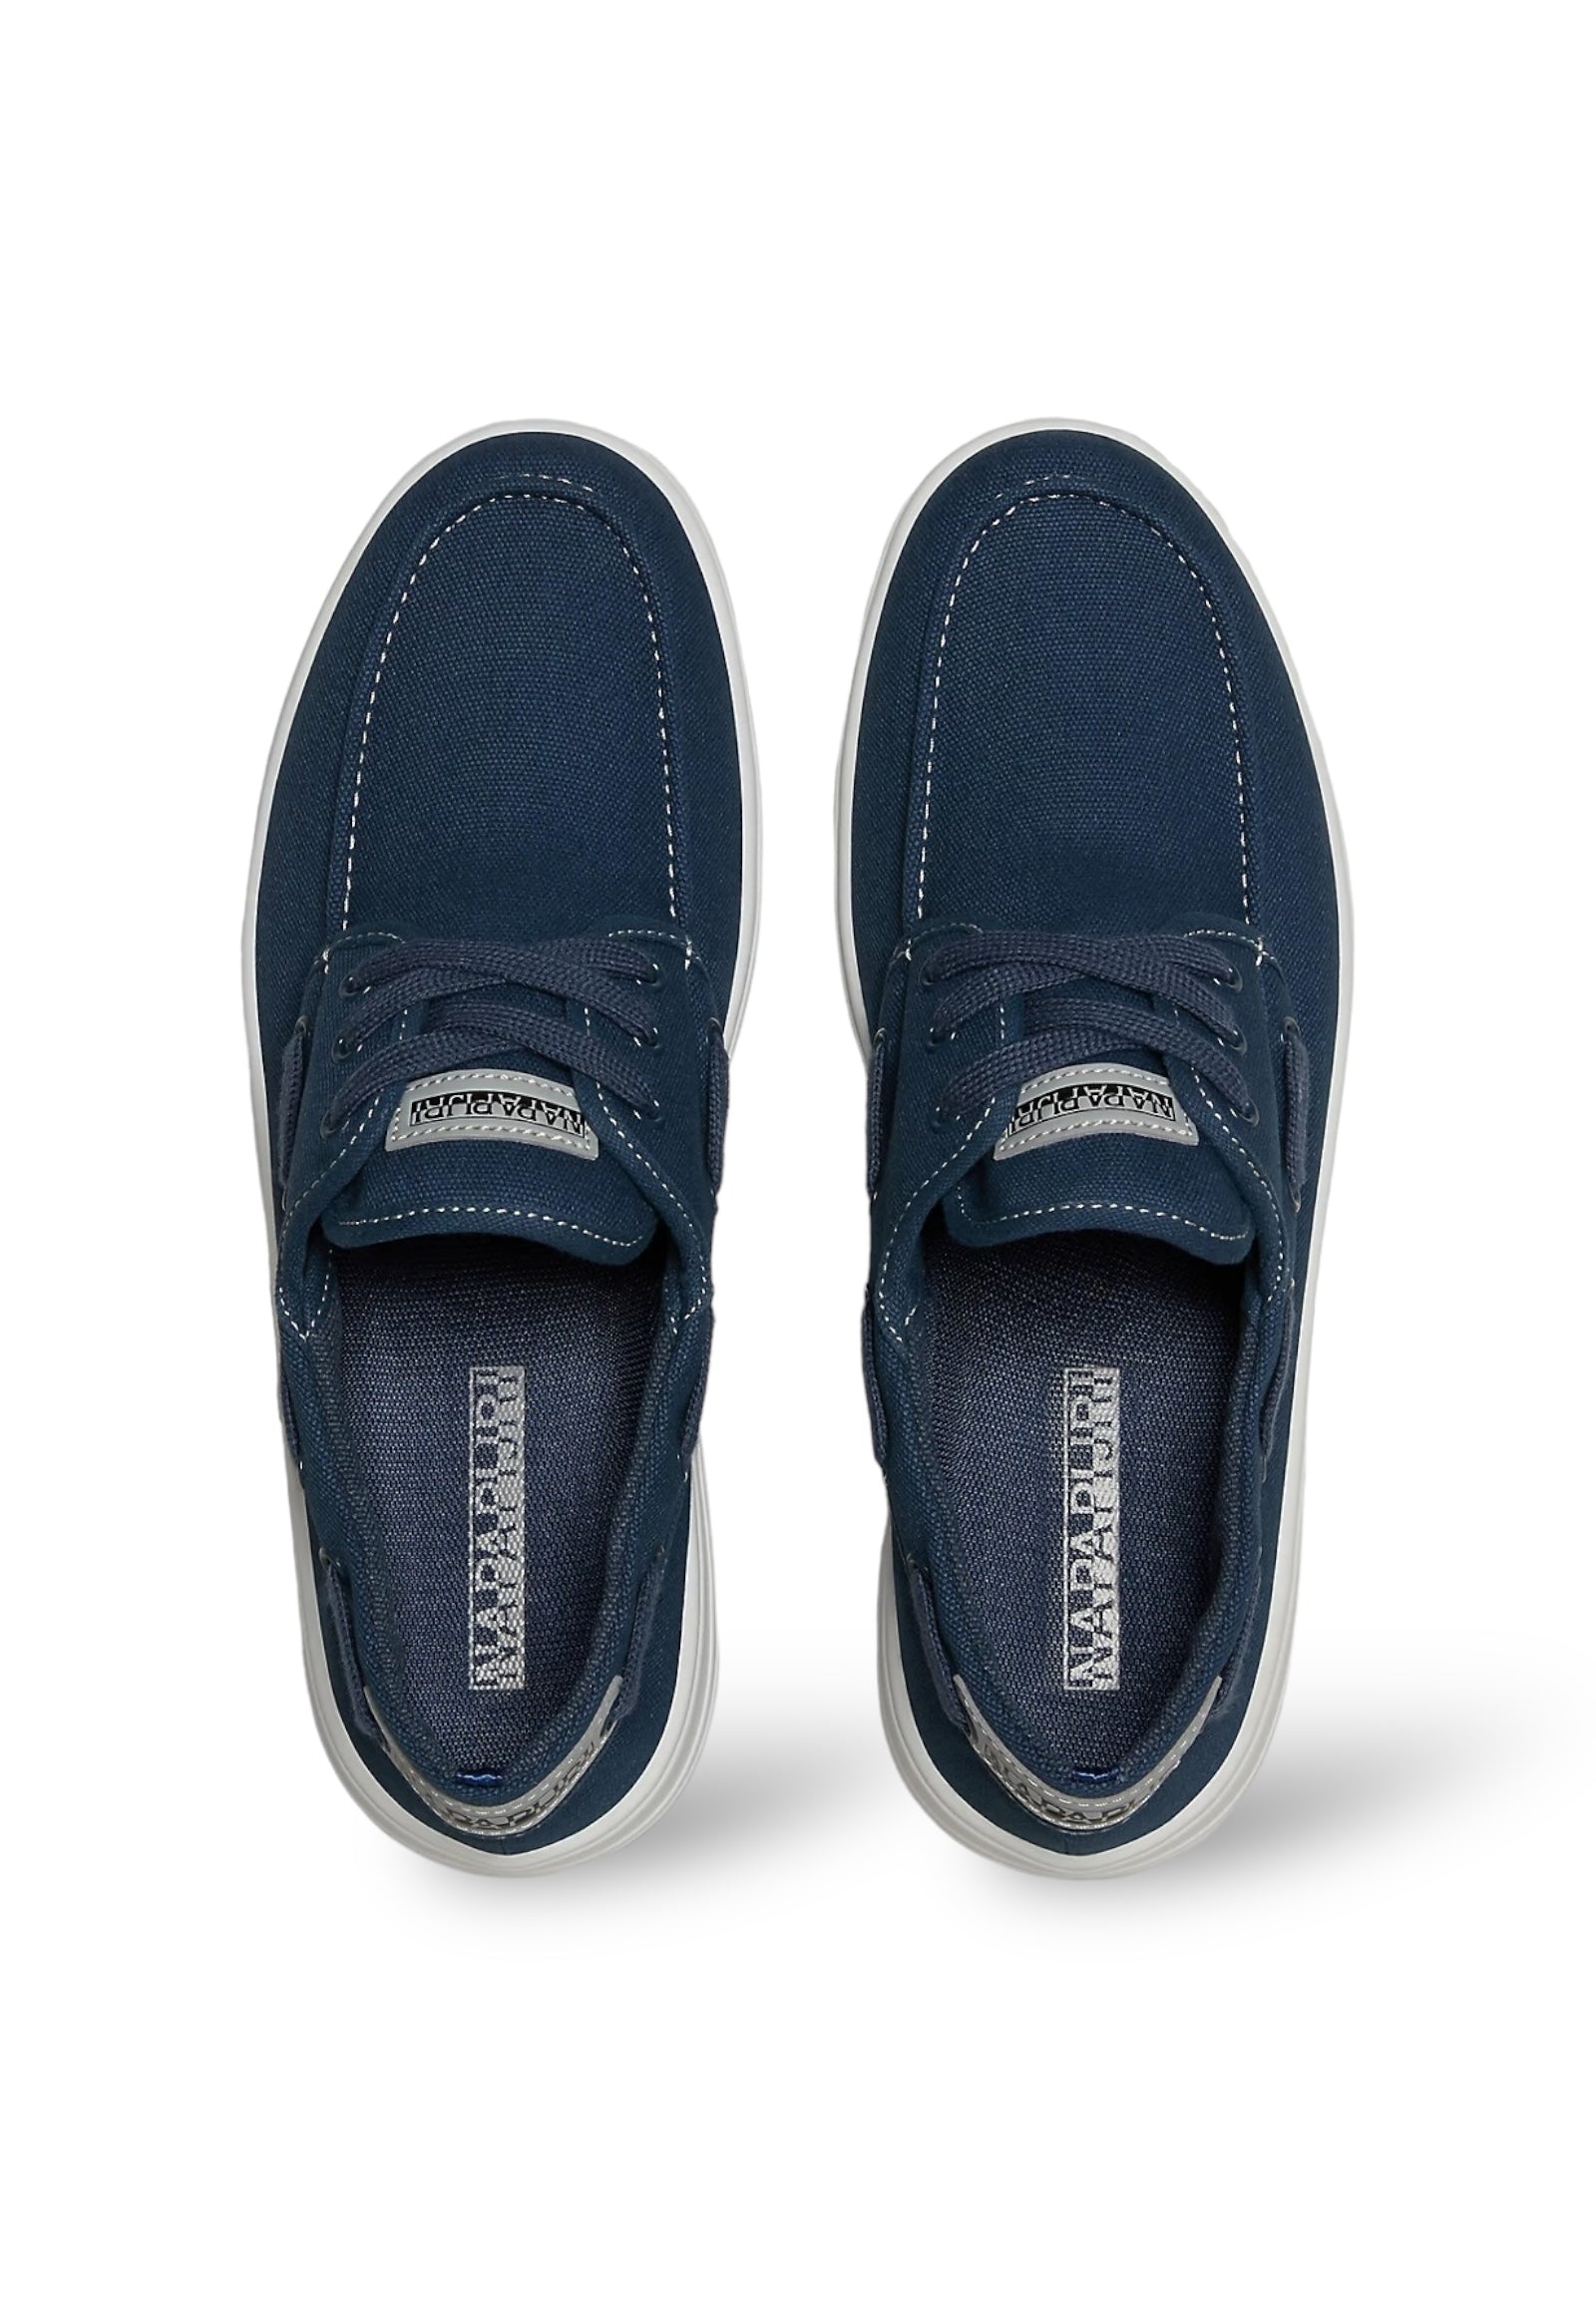 Sneakers Np0a4i7i Blue Marine